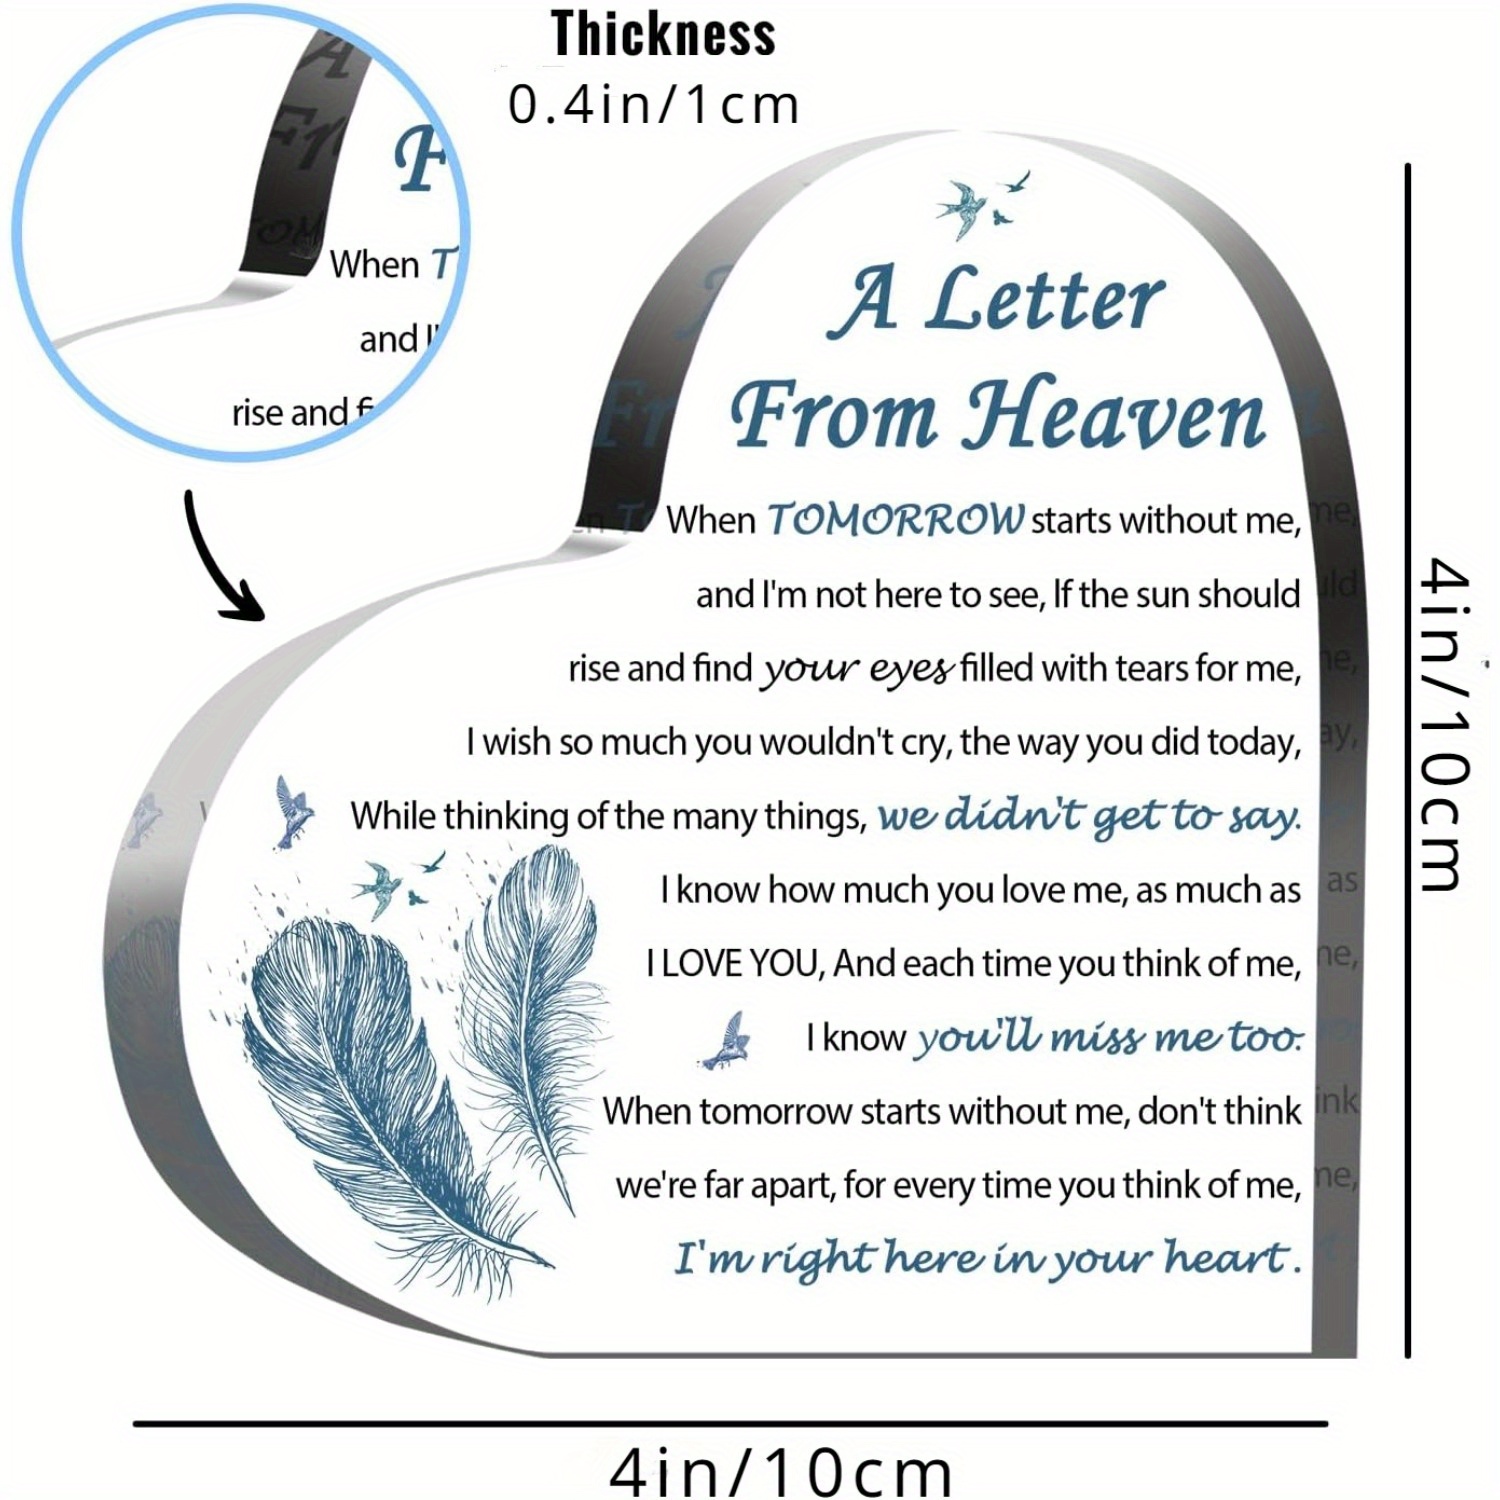 Zeitgenössisches Acryl-Herz-Andenken - Tisch-Gedenktafel mit Brief aus dem Himmel Gedicht - Vielseitiges Beileidsgeschenk für den Verlust eines geliebten Menschen - Langlebig, kein Strom benötigt